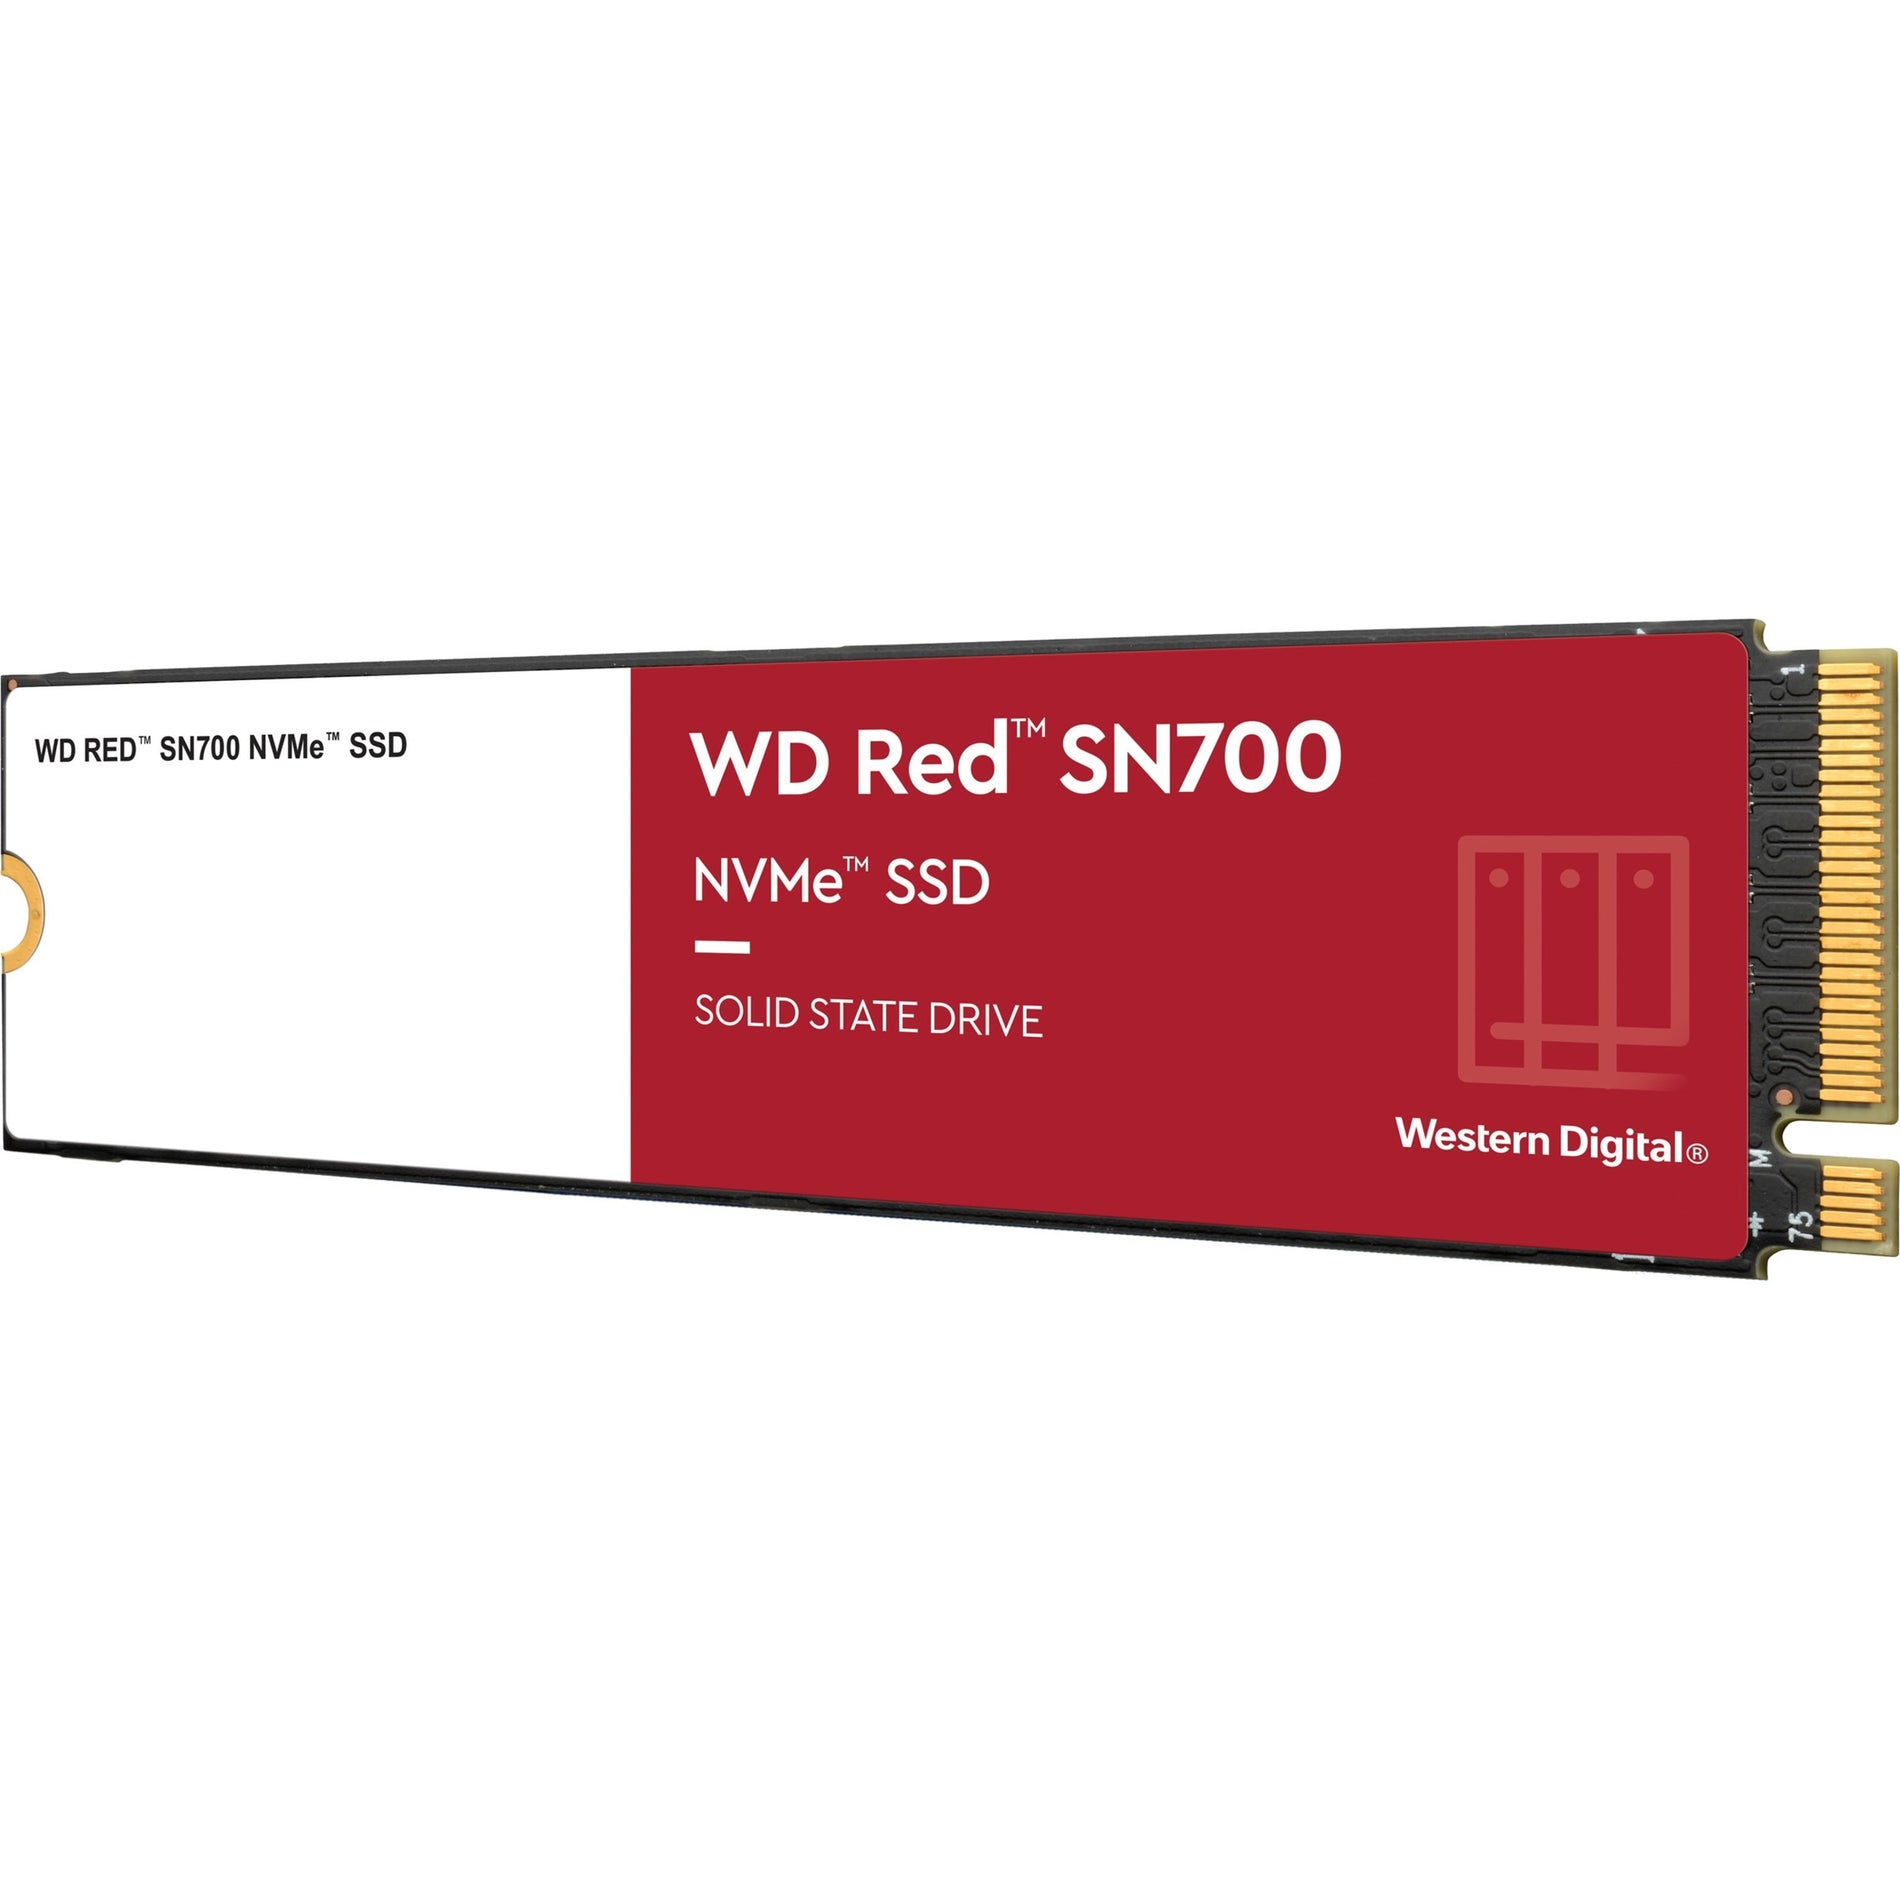 Western Digital WDS500G1R0C Red SN700 NVMe SSD, 500GB Storage Capacity, 5 Year Warranty